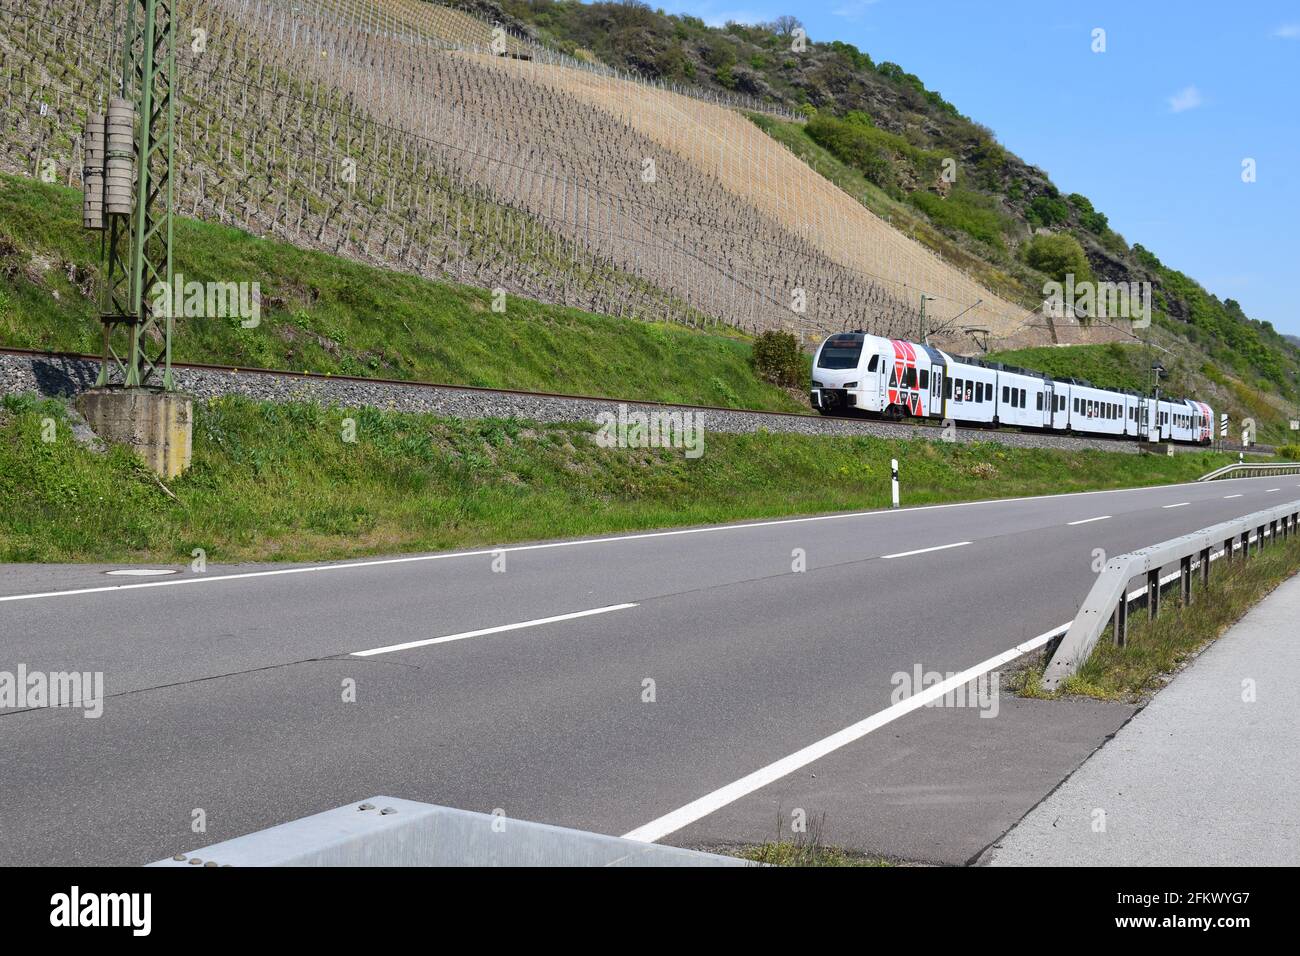 train through Mittelrheintal Stock Photo